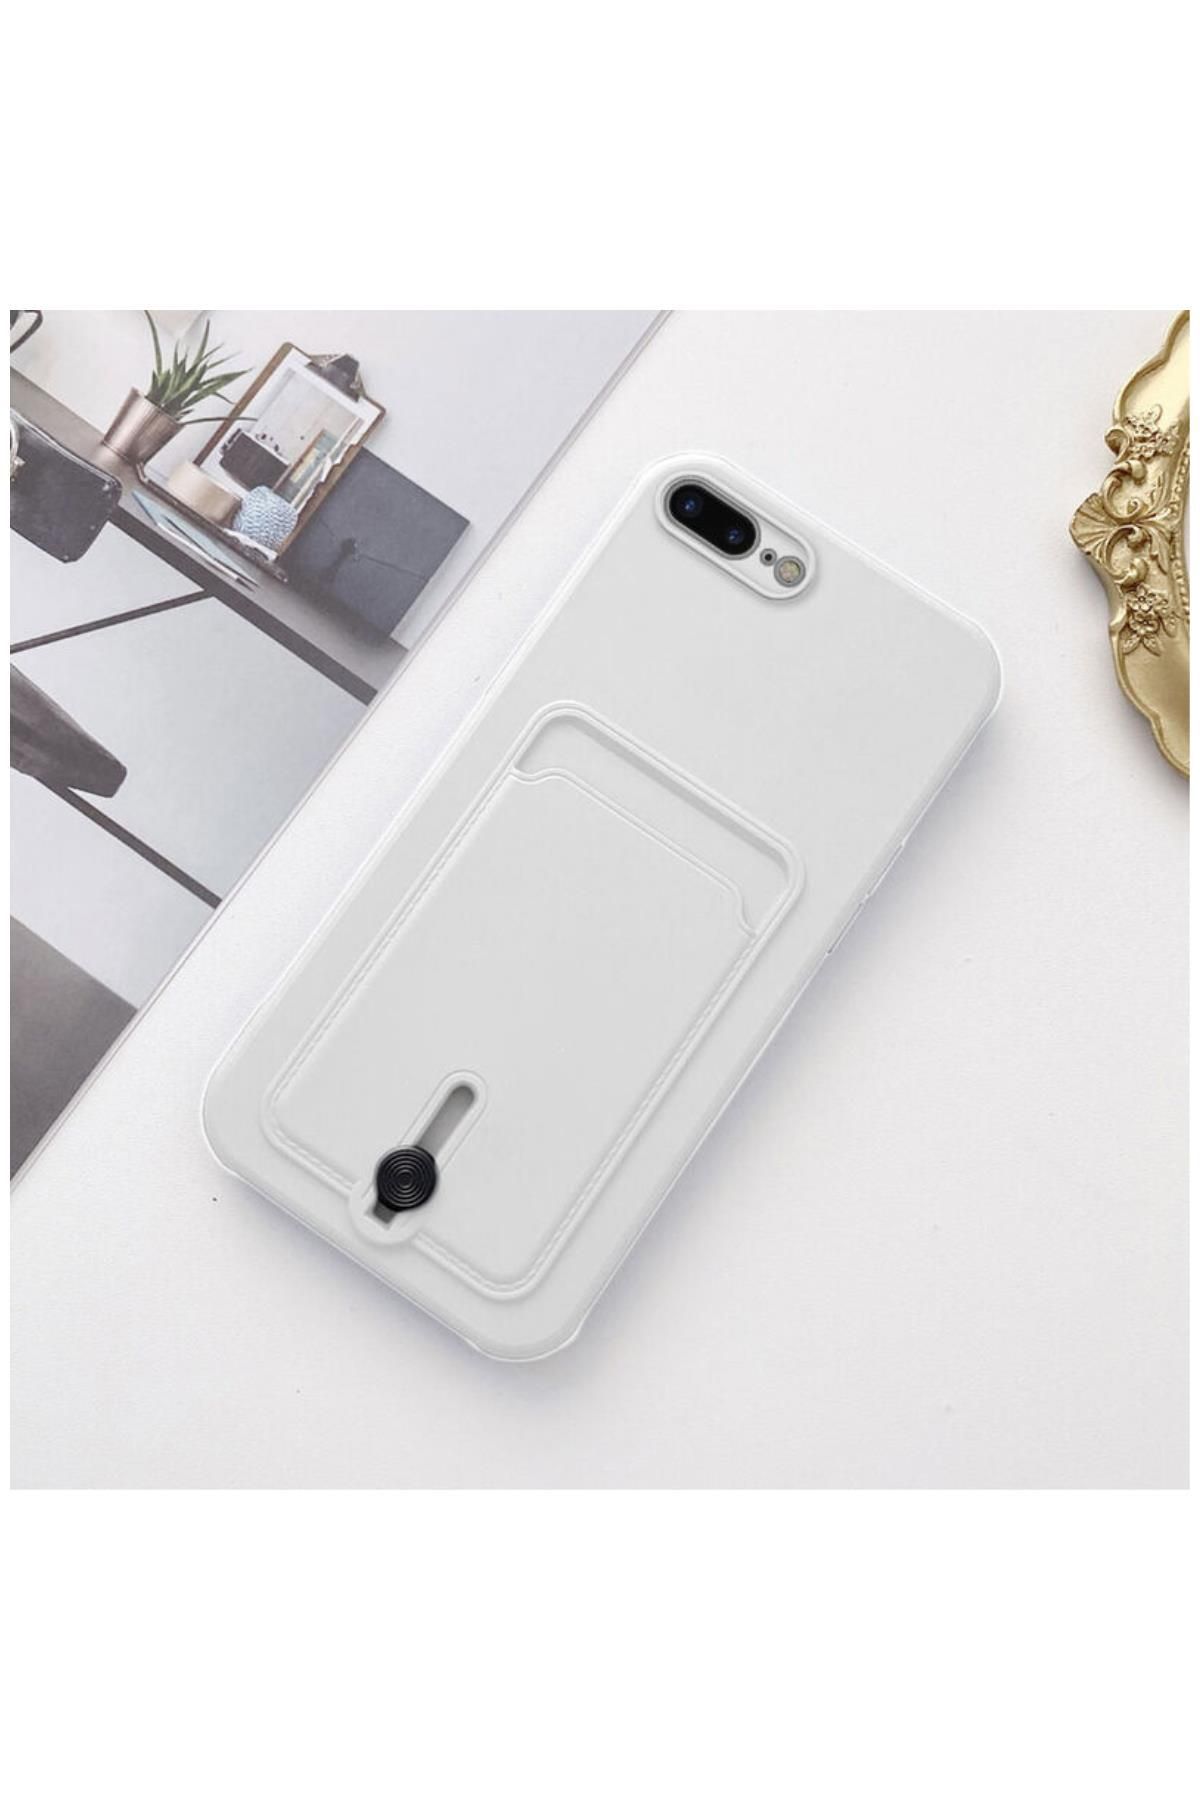 Zebana Apple iPhone 8 Plus Uyumlu Kılıf Zebana Kartlıklı Sweet Yumuşak Silikon Kılıf Beyaz